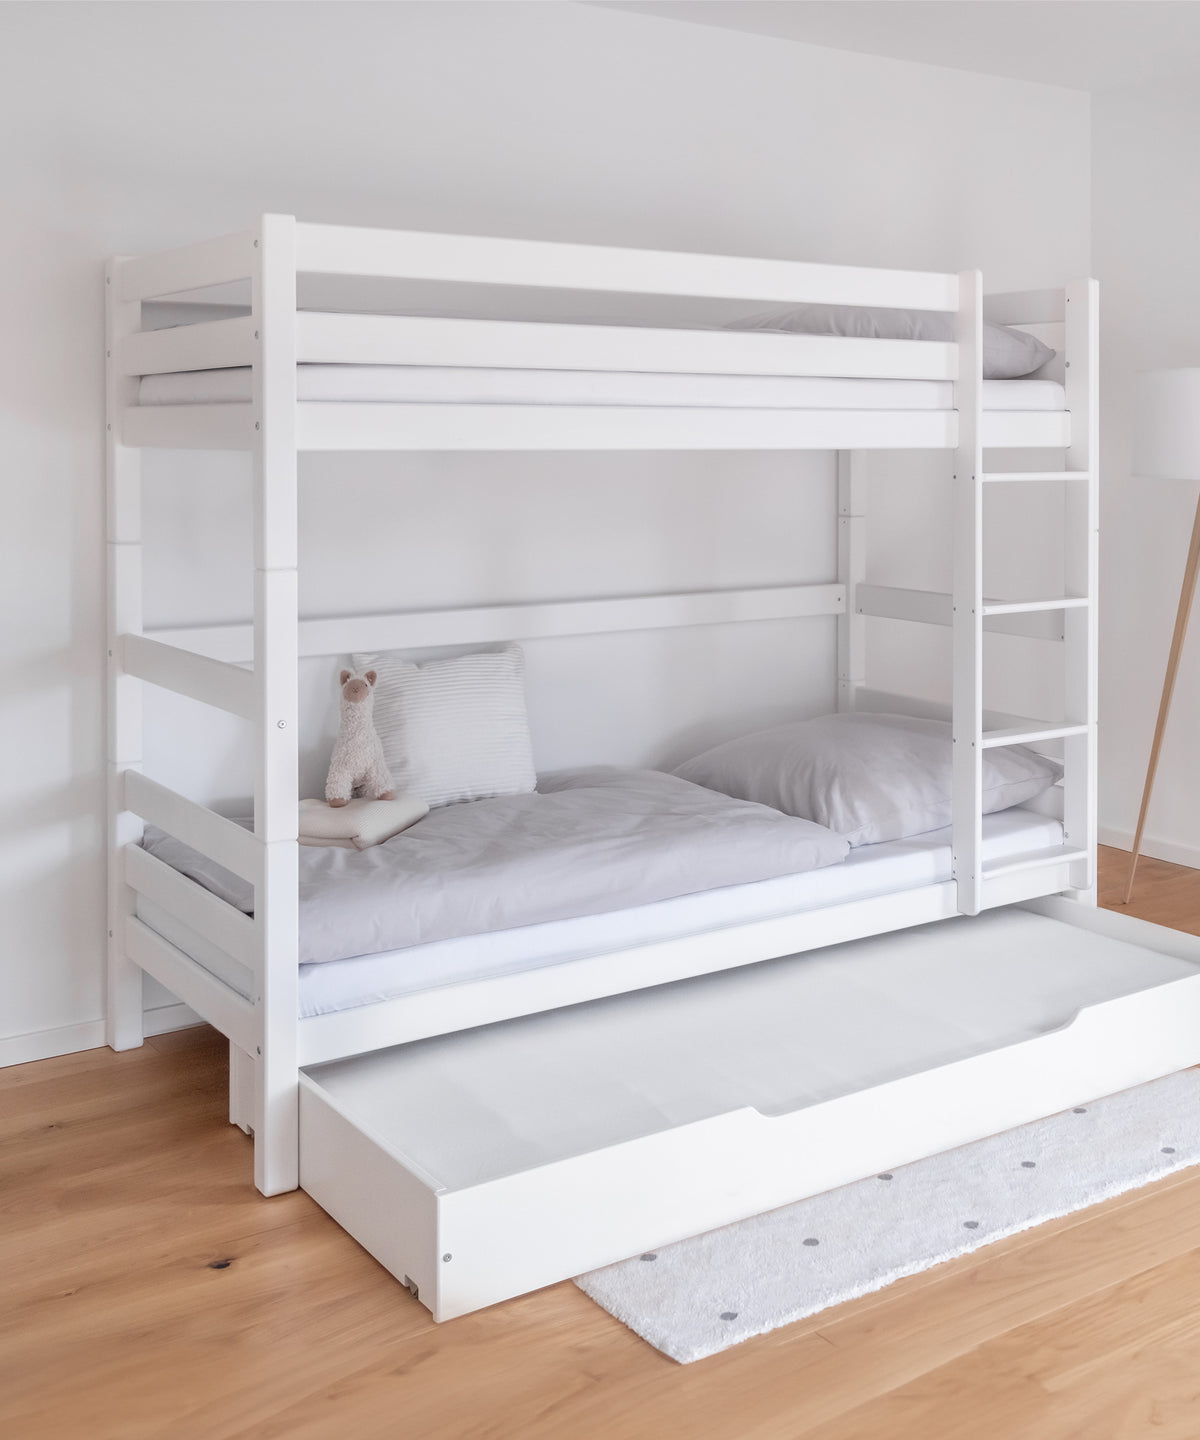 Etagenbett hoch in der Farbe Weiß mit ausgezogenem Bettkasten.